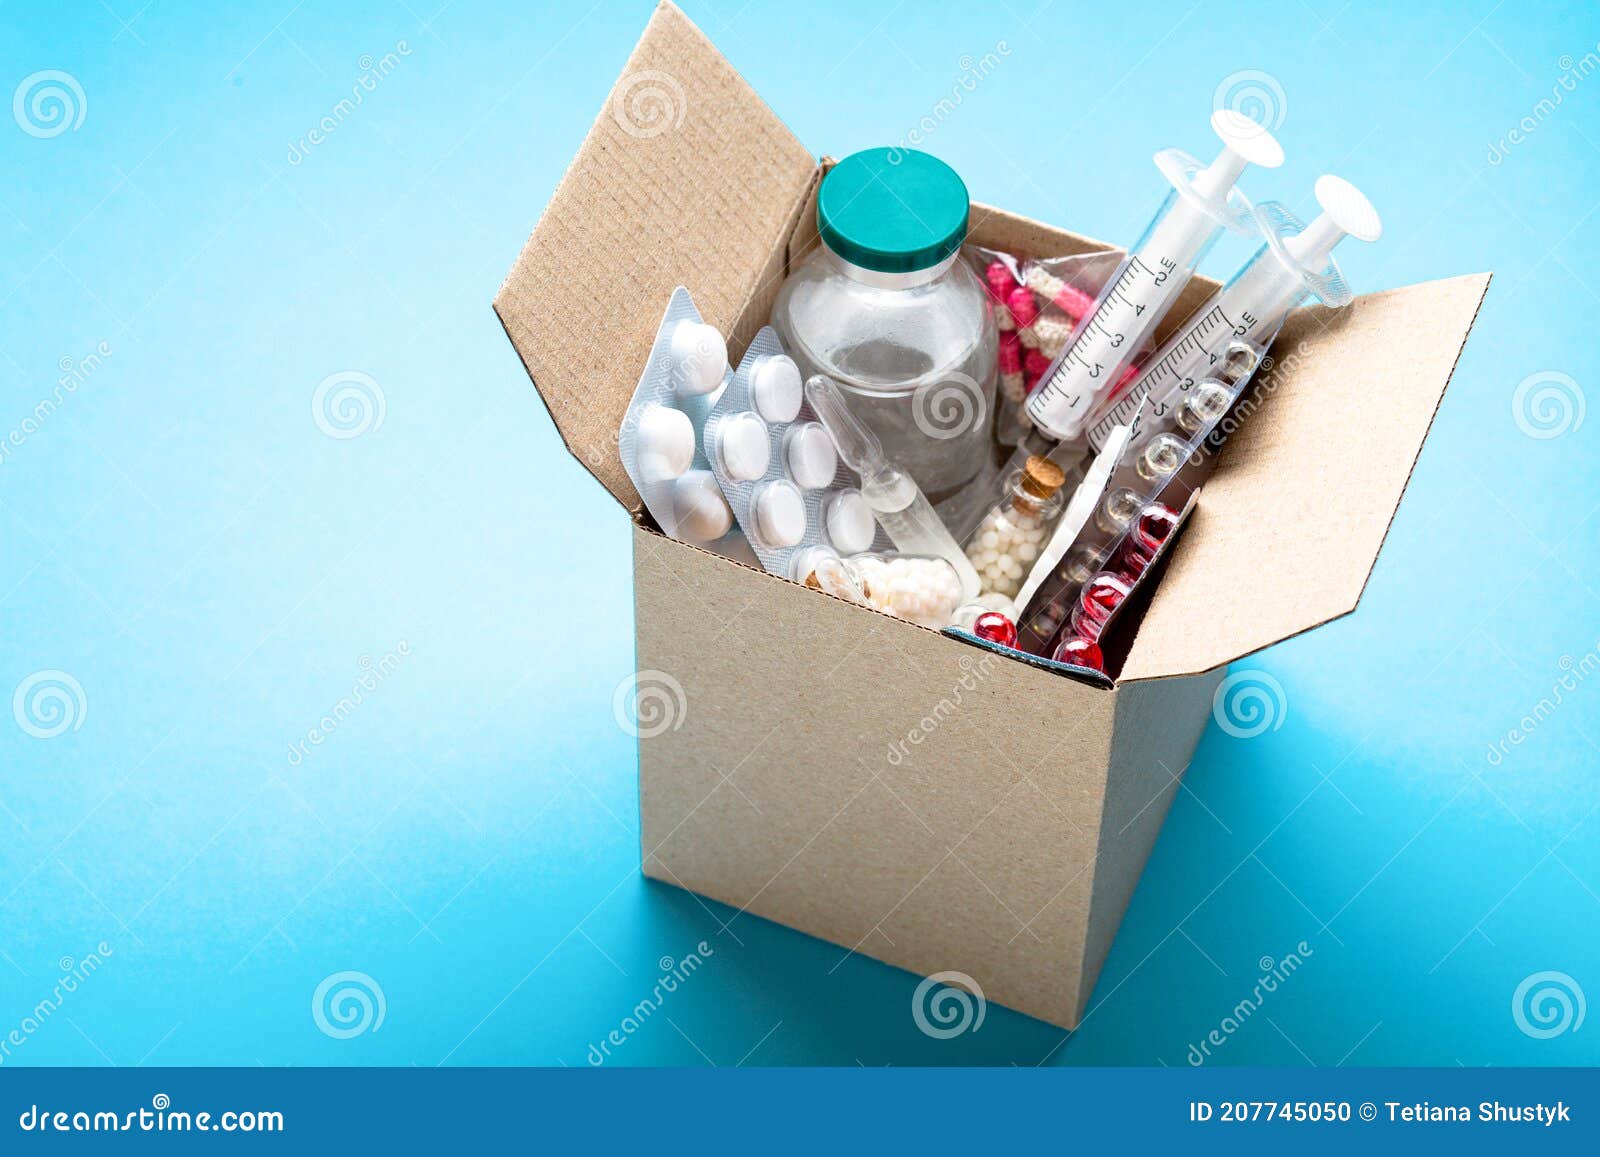 Entrega De Medicamentos a Domicilio Desde La Caja De La Farmacia